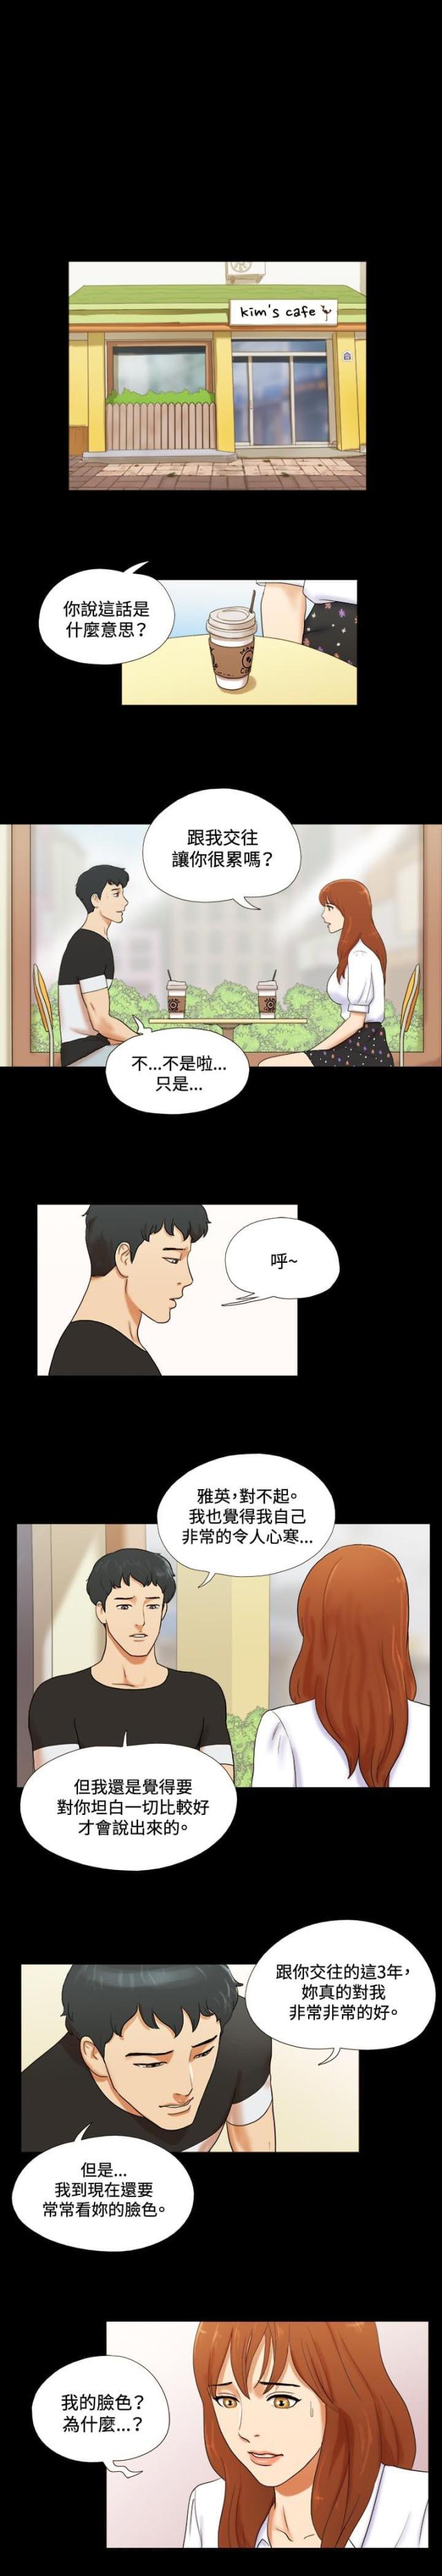 17种性幻想韩国伦理漫画无遮羞资源